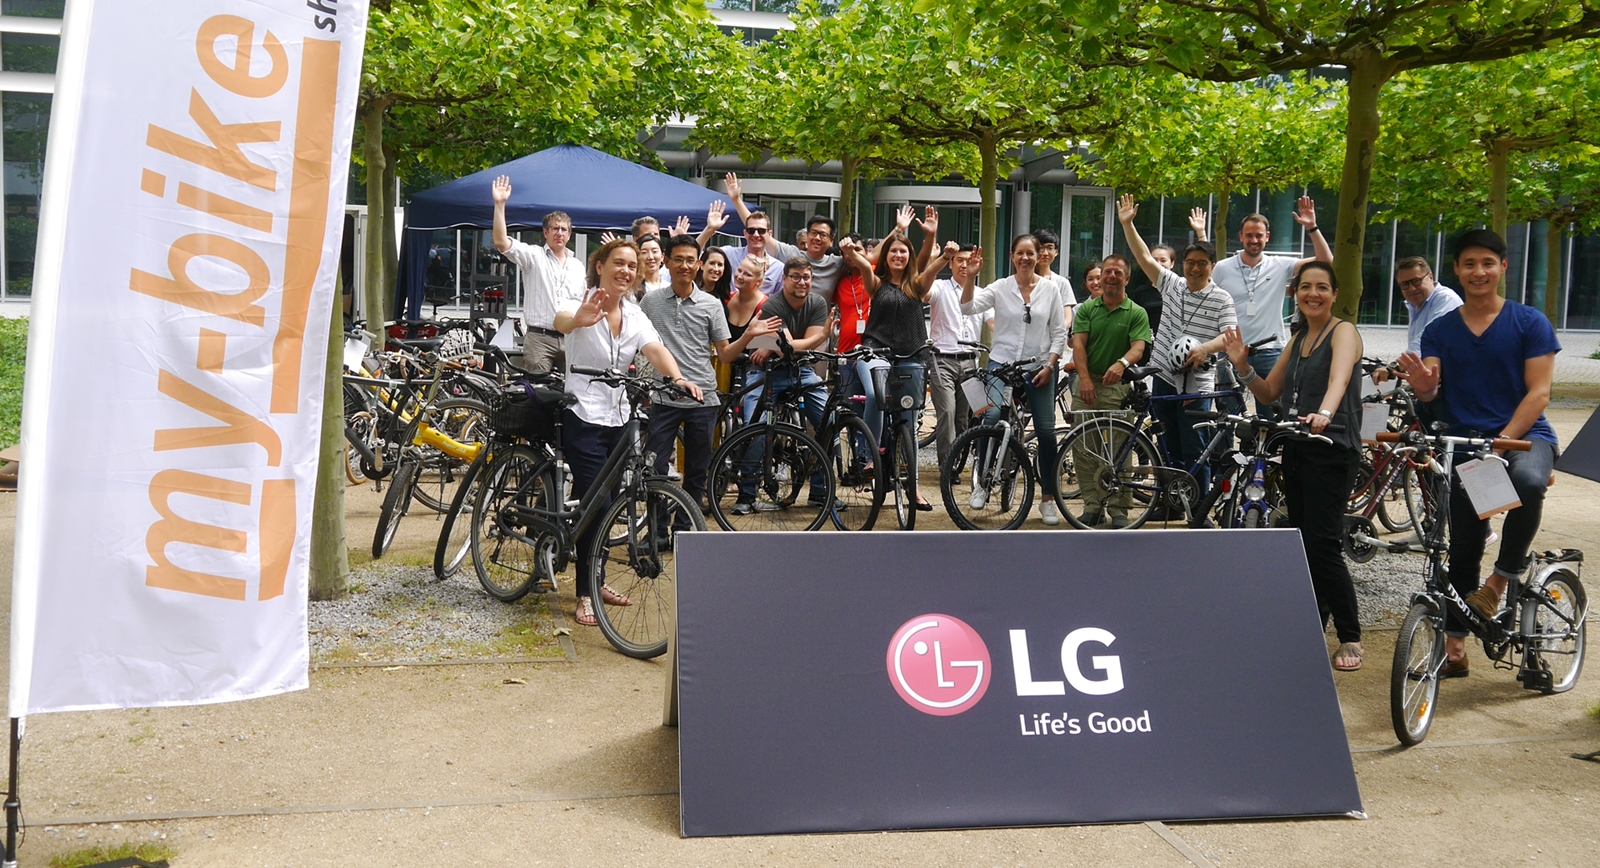 LG전자가 ‘세계 환경의 날’(6월 5일)을 맞아 대기오염물질을 줄이는 이벤트를 마련했다. 독일에서 근무하는 LG전자 직원들이 ‘자전거 타고 출근하는 날(Bike To Work Day)’ 행사에 참여한 모습